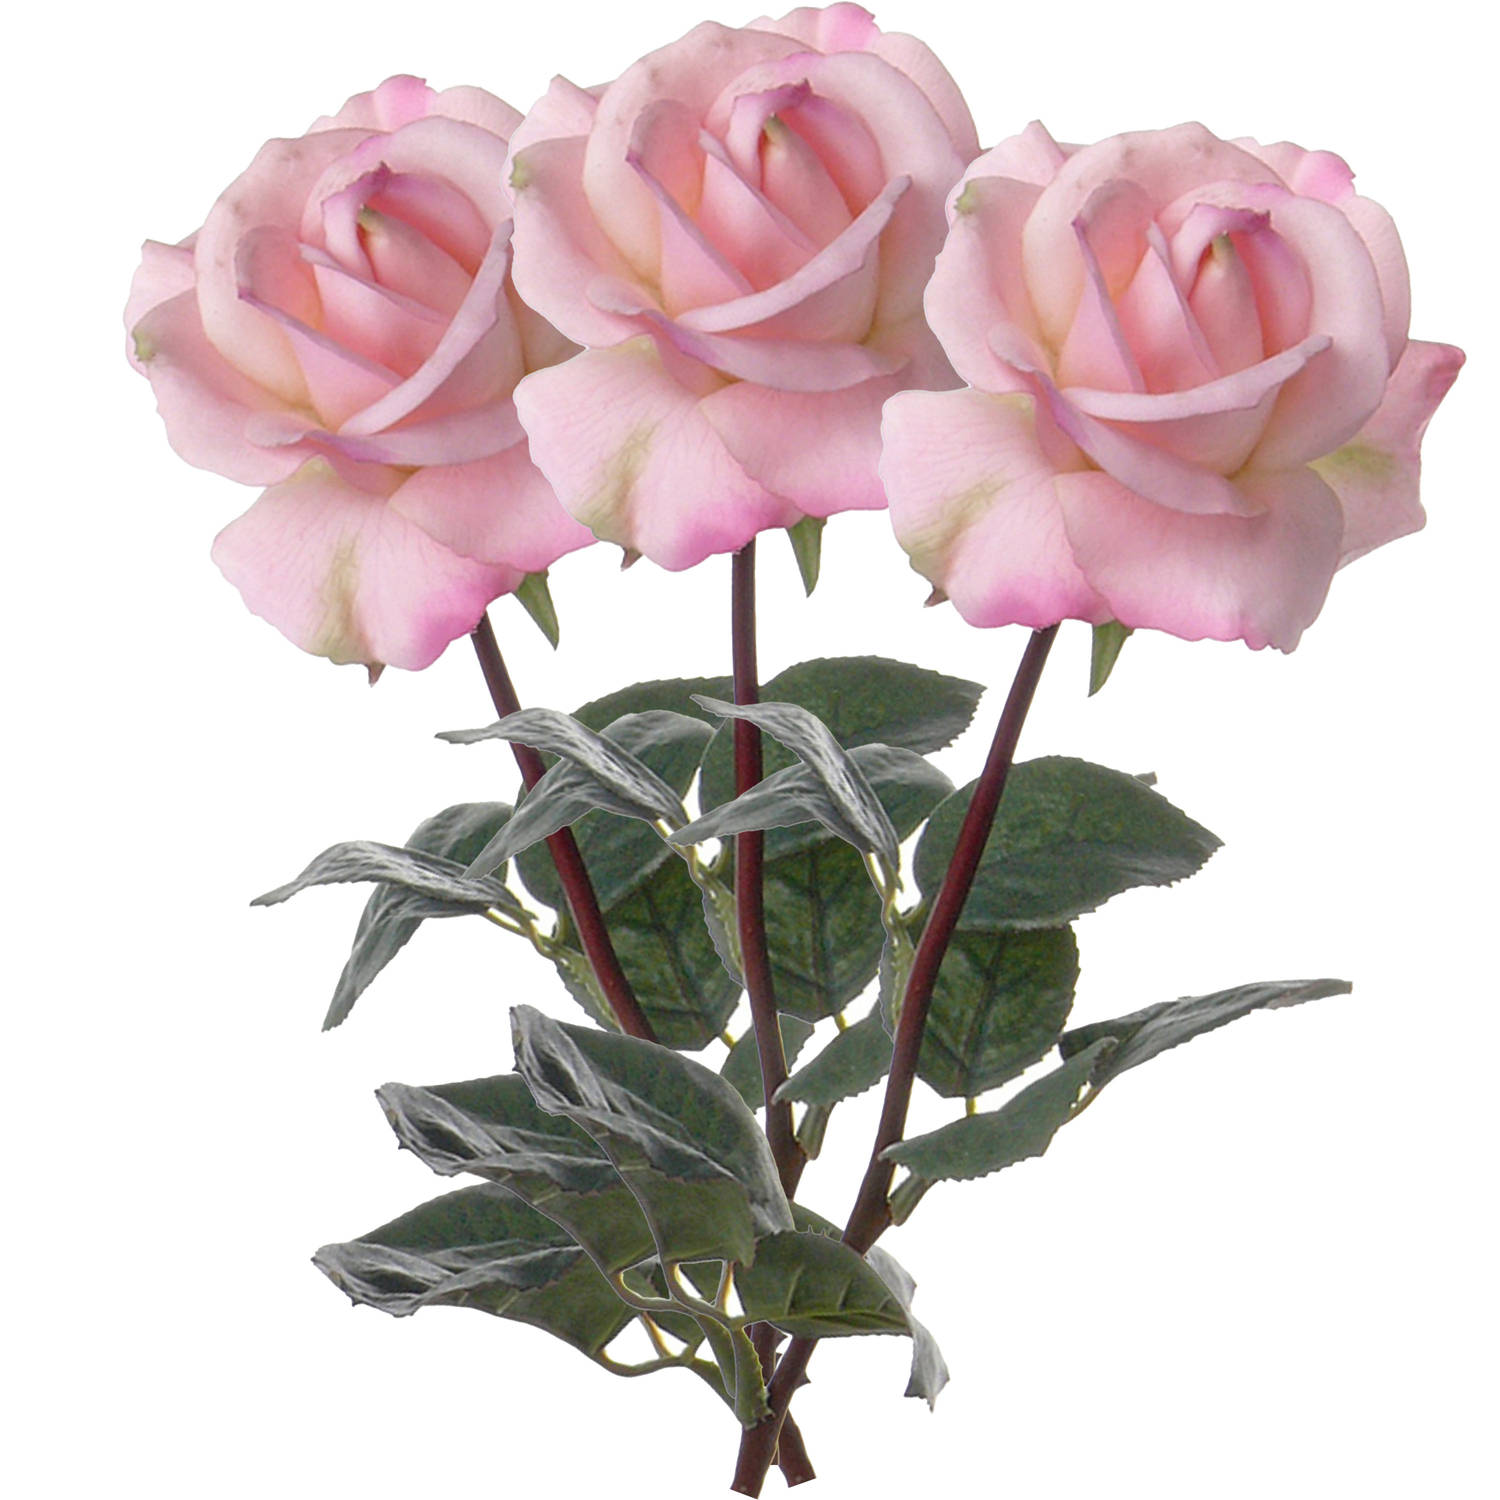 Top Art Kunstbloem roos Caroline - 3x - roze - 70 cm - zijde - kunststof steel - decoratie bloemen - Kunstbloemen